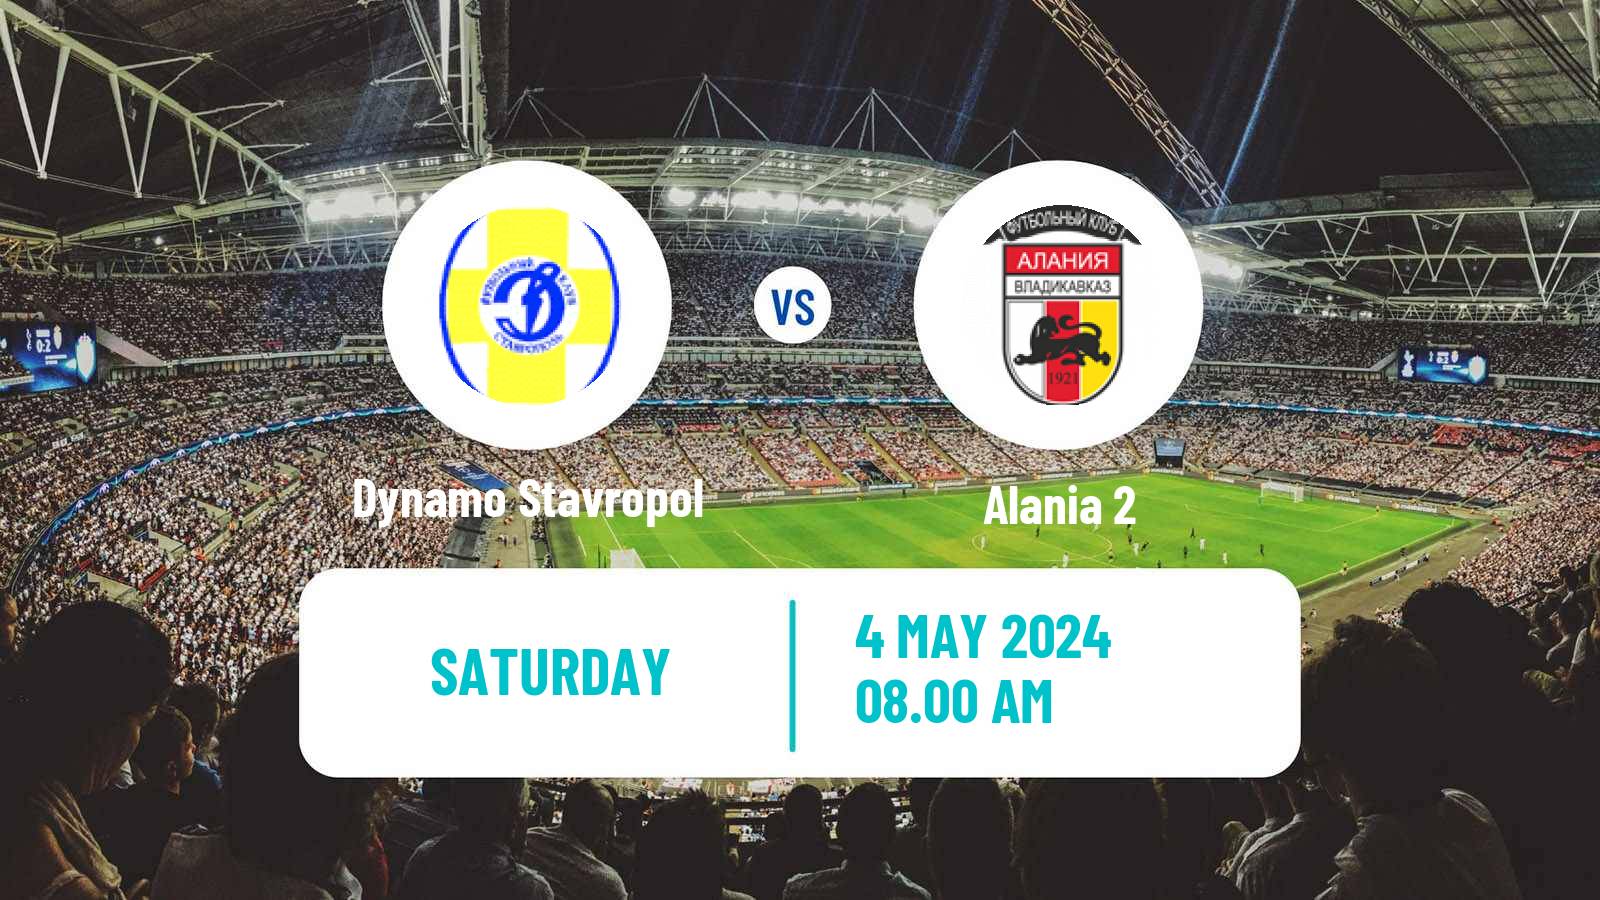 Soccer FNL 2 Division B Group 1 Dynamo Stavropol - Alania 2